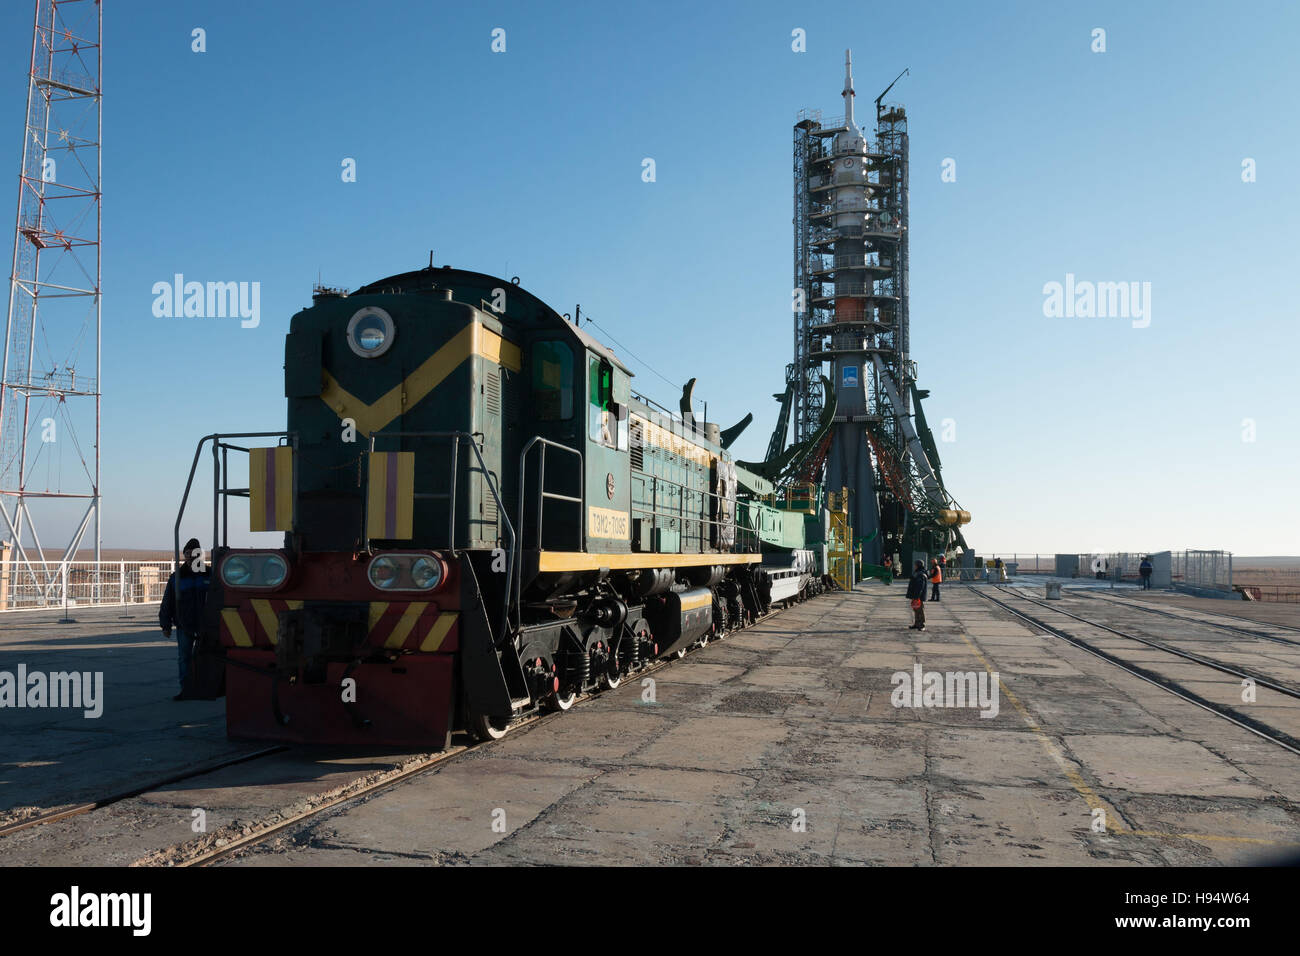 Die russische Sojus-Rakete und Sojus MS-03 Raumschiff sitzt auf dem Kosmodrom Baikonur Launch Pad in Vorbereitung auf die Mission der NASA internationale Raumstation Expedition 50-51 14. November 2016 in Baikonur, Kasachstan. Stockfoto